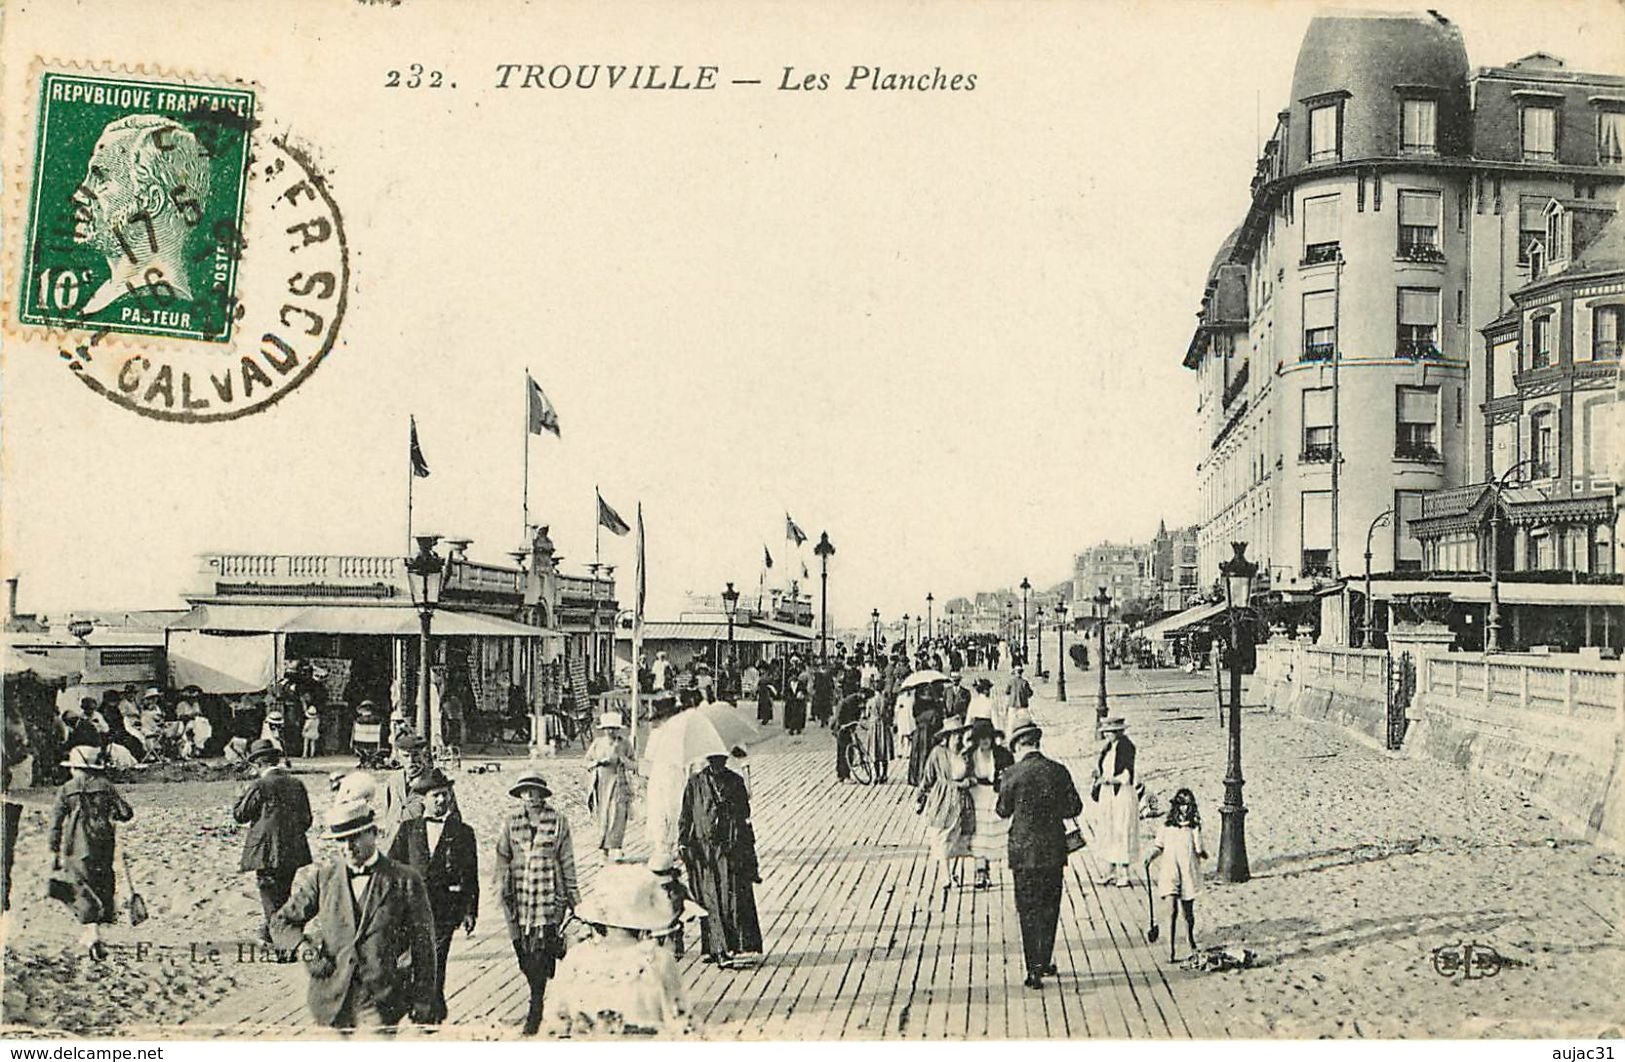 Dép 14 - Calvados - Deauville 32 cartes - Trouville 72 cartes - Lots en vrac - Lot de 104 cartes